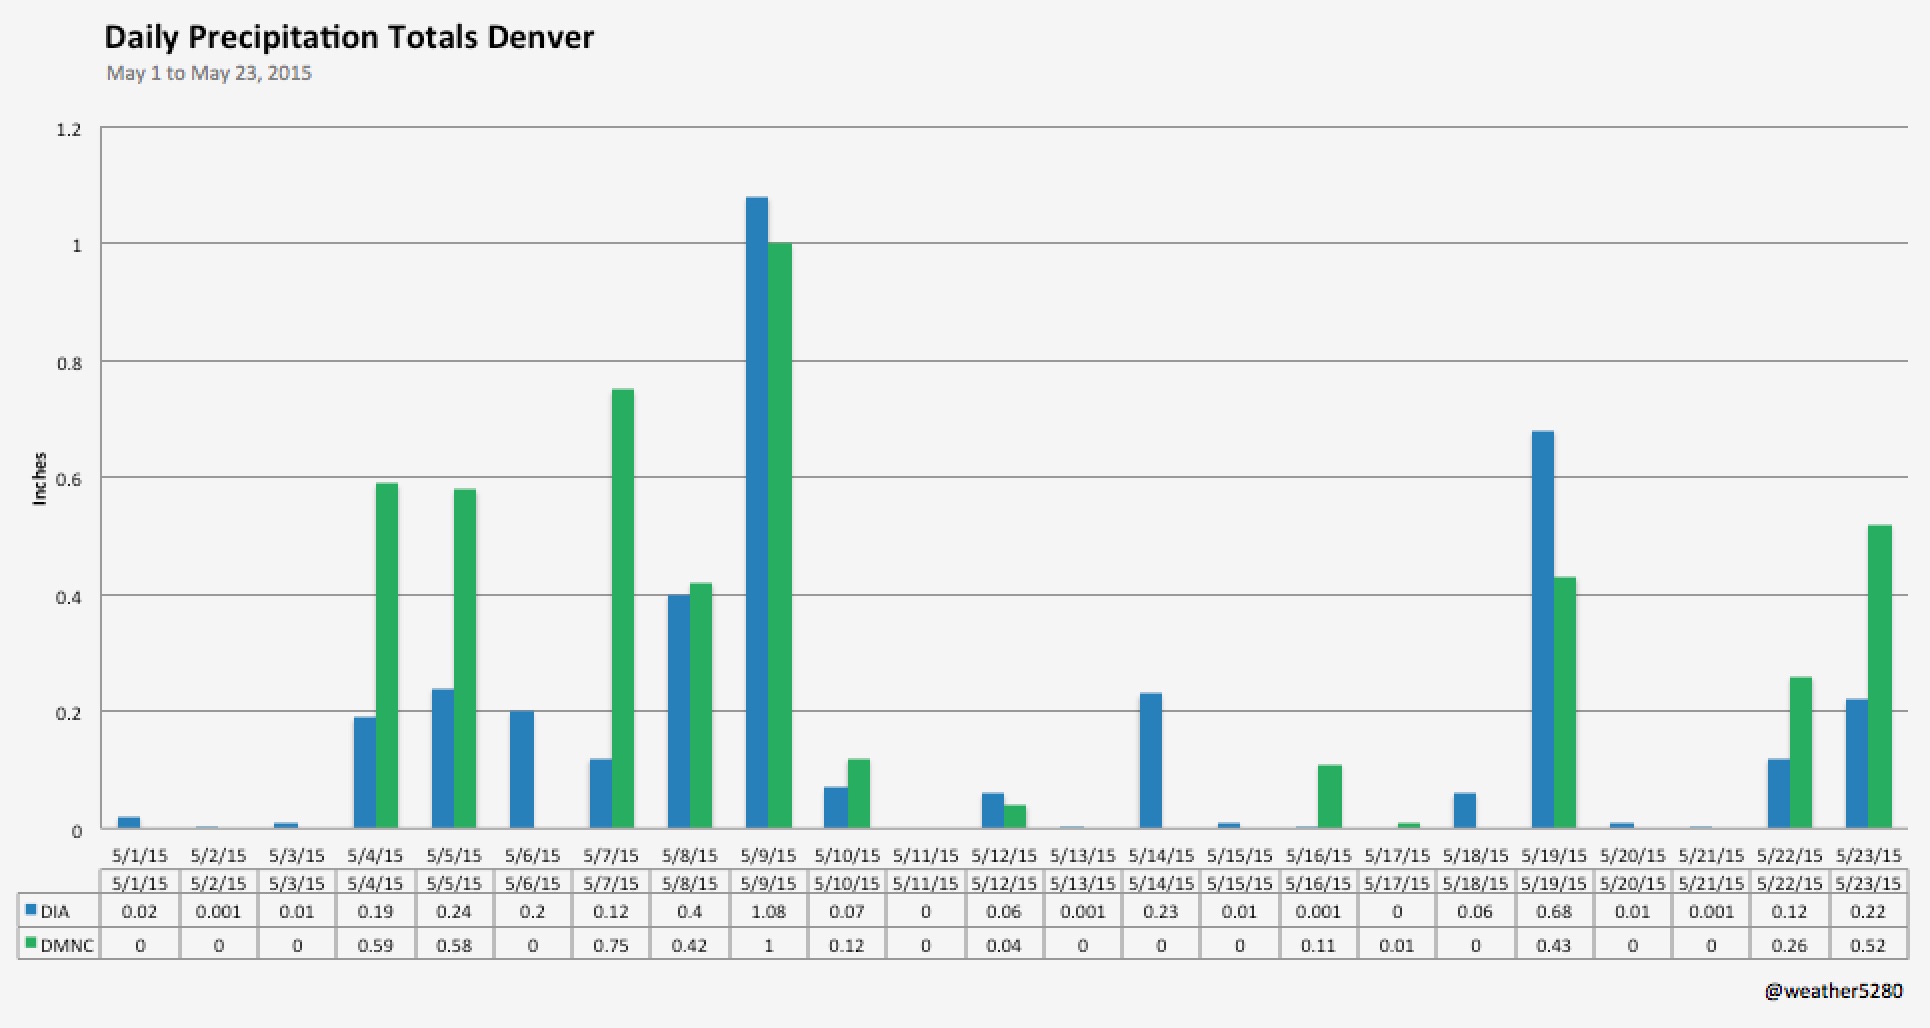 Denver precipitation totals, May, 2015